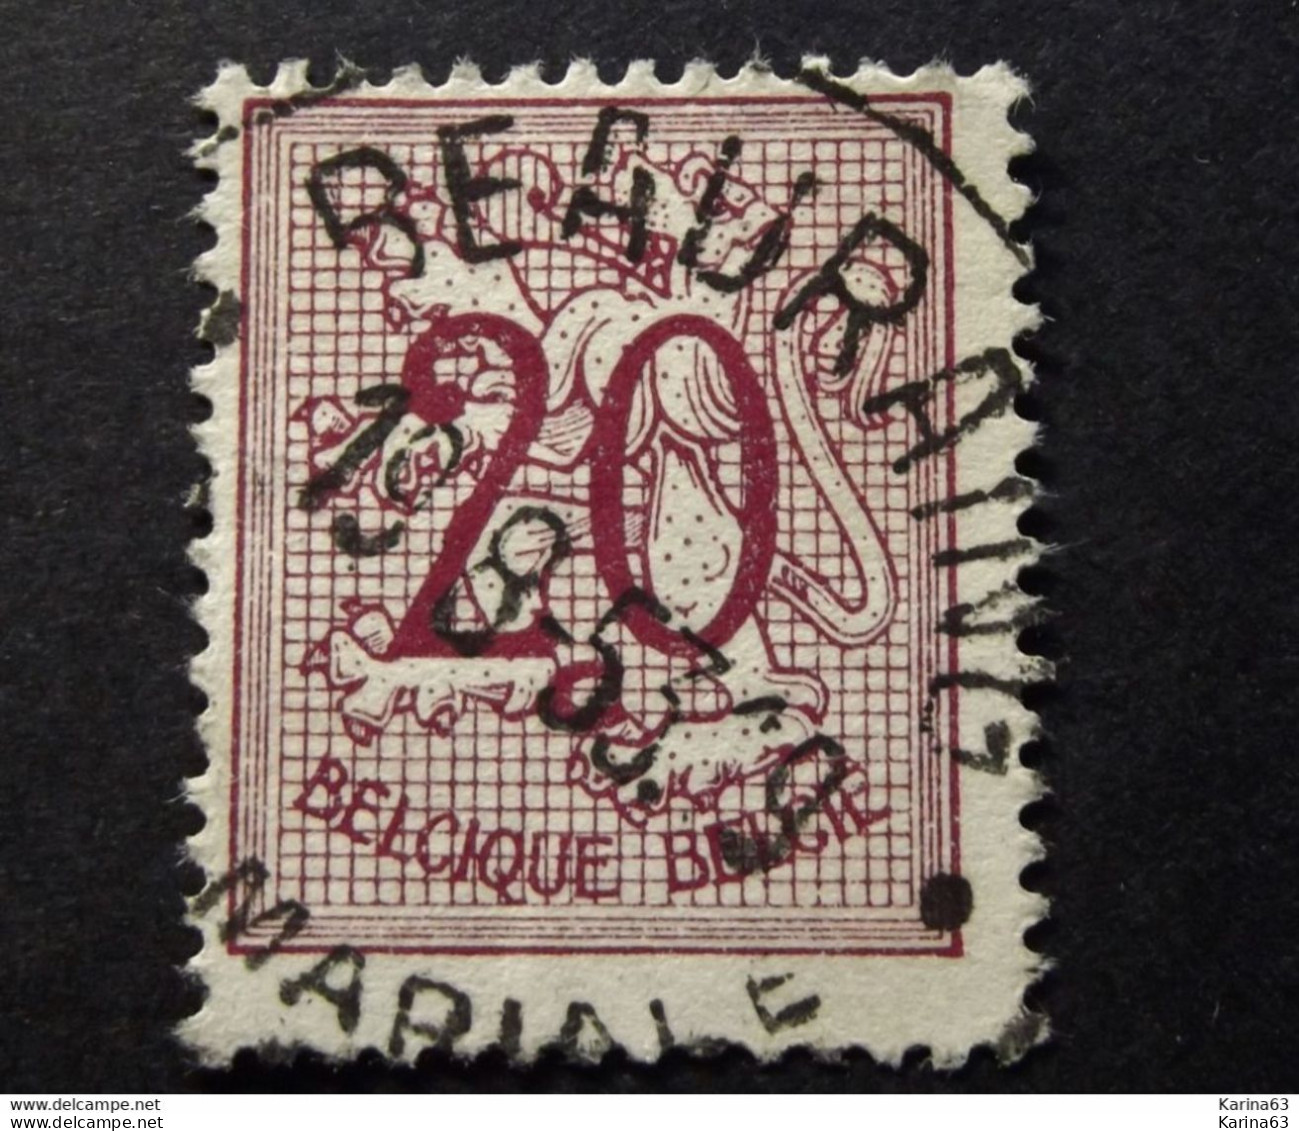 Belgie Belgique - 1951 - OPB/COB N° 851 - (  1 Value ) -  Cijfer Op Heraldieke Leeuw  Obl. Beauraing  1953 - Oblitérés